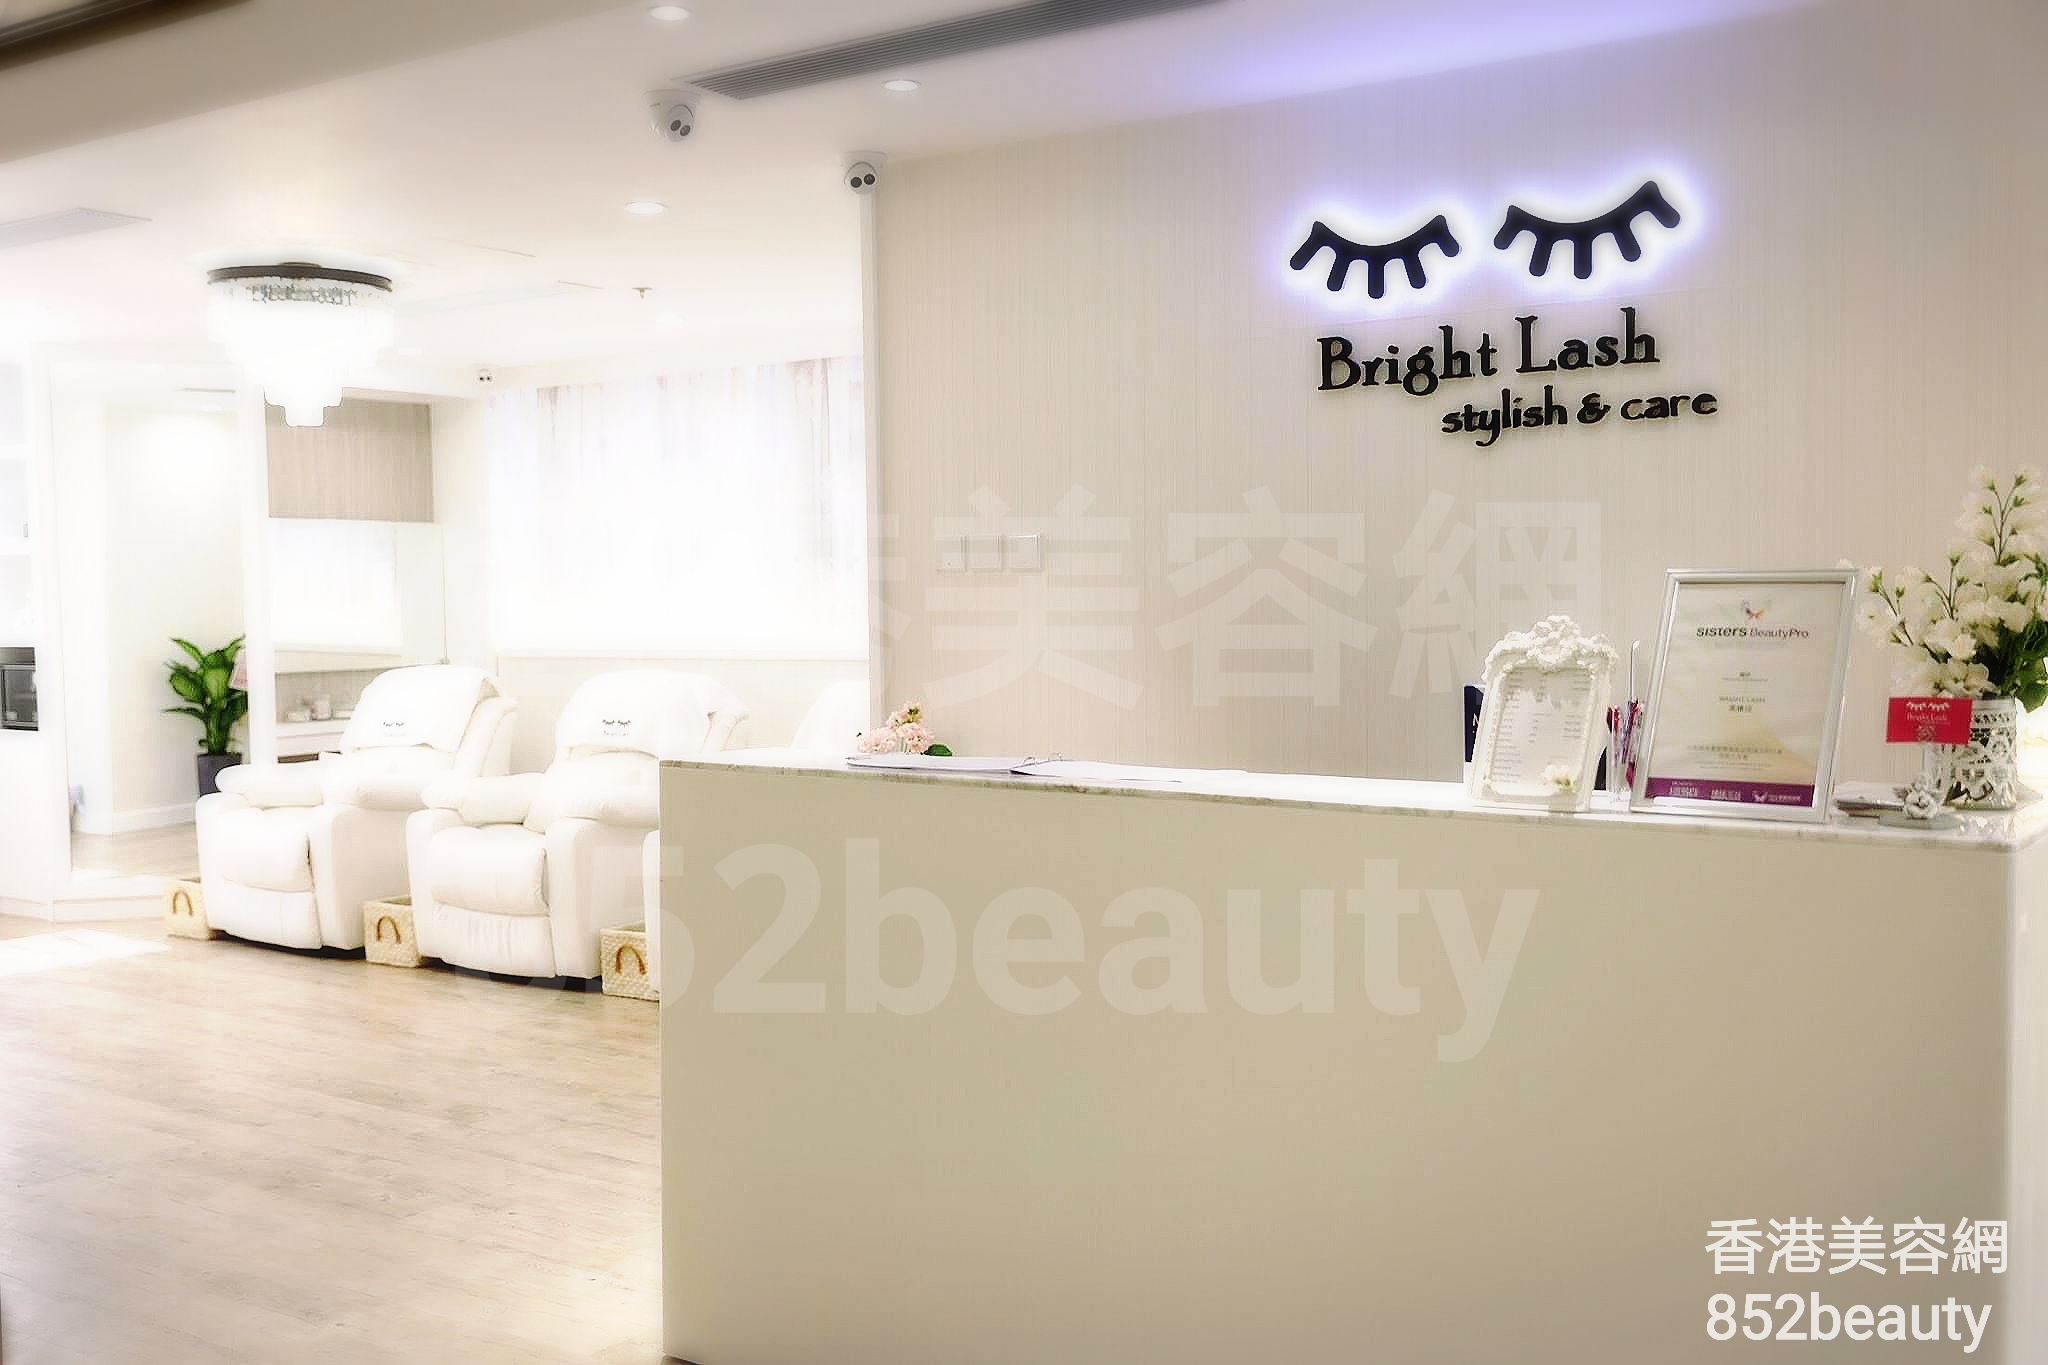 美容院 Beauty Salon: Bright Lash